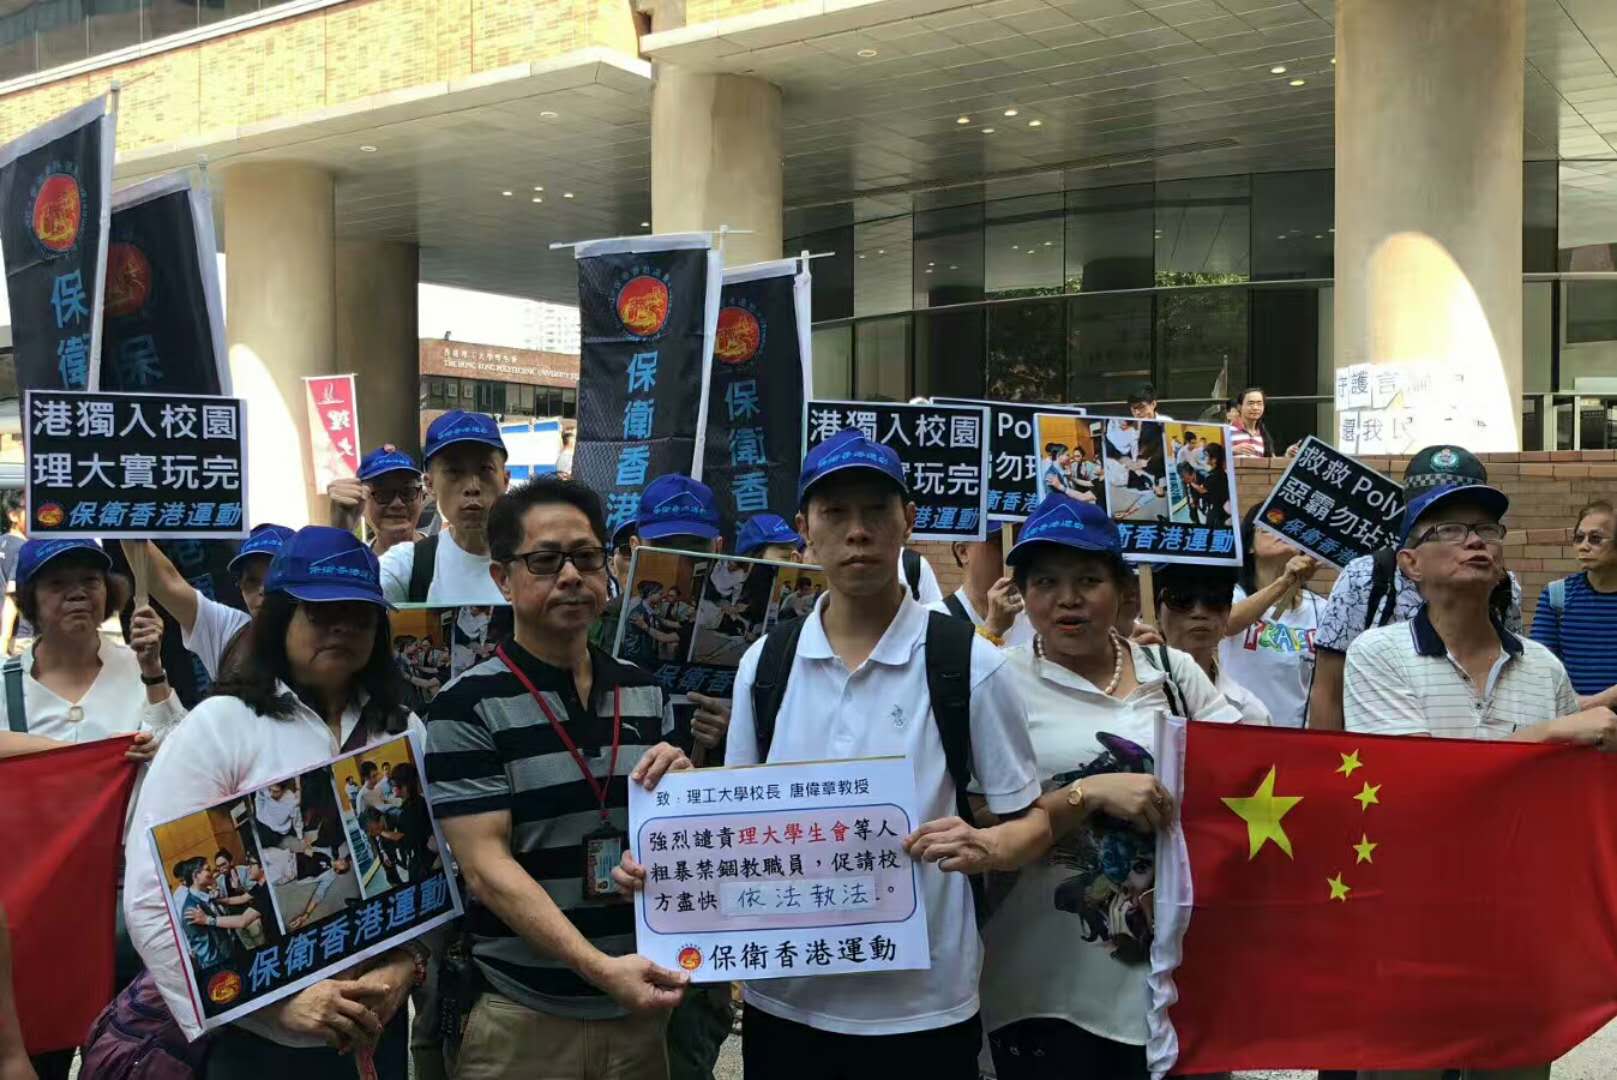 團體遊行抗議理大學生會暴力行為 冀校方阻止「港獨」進入校園 